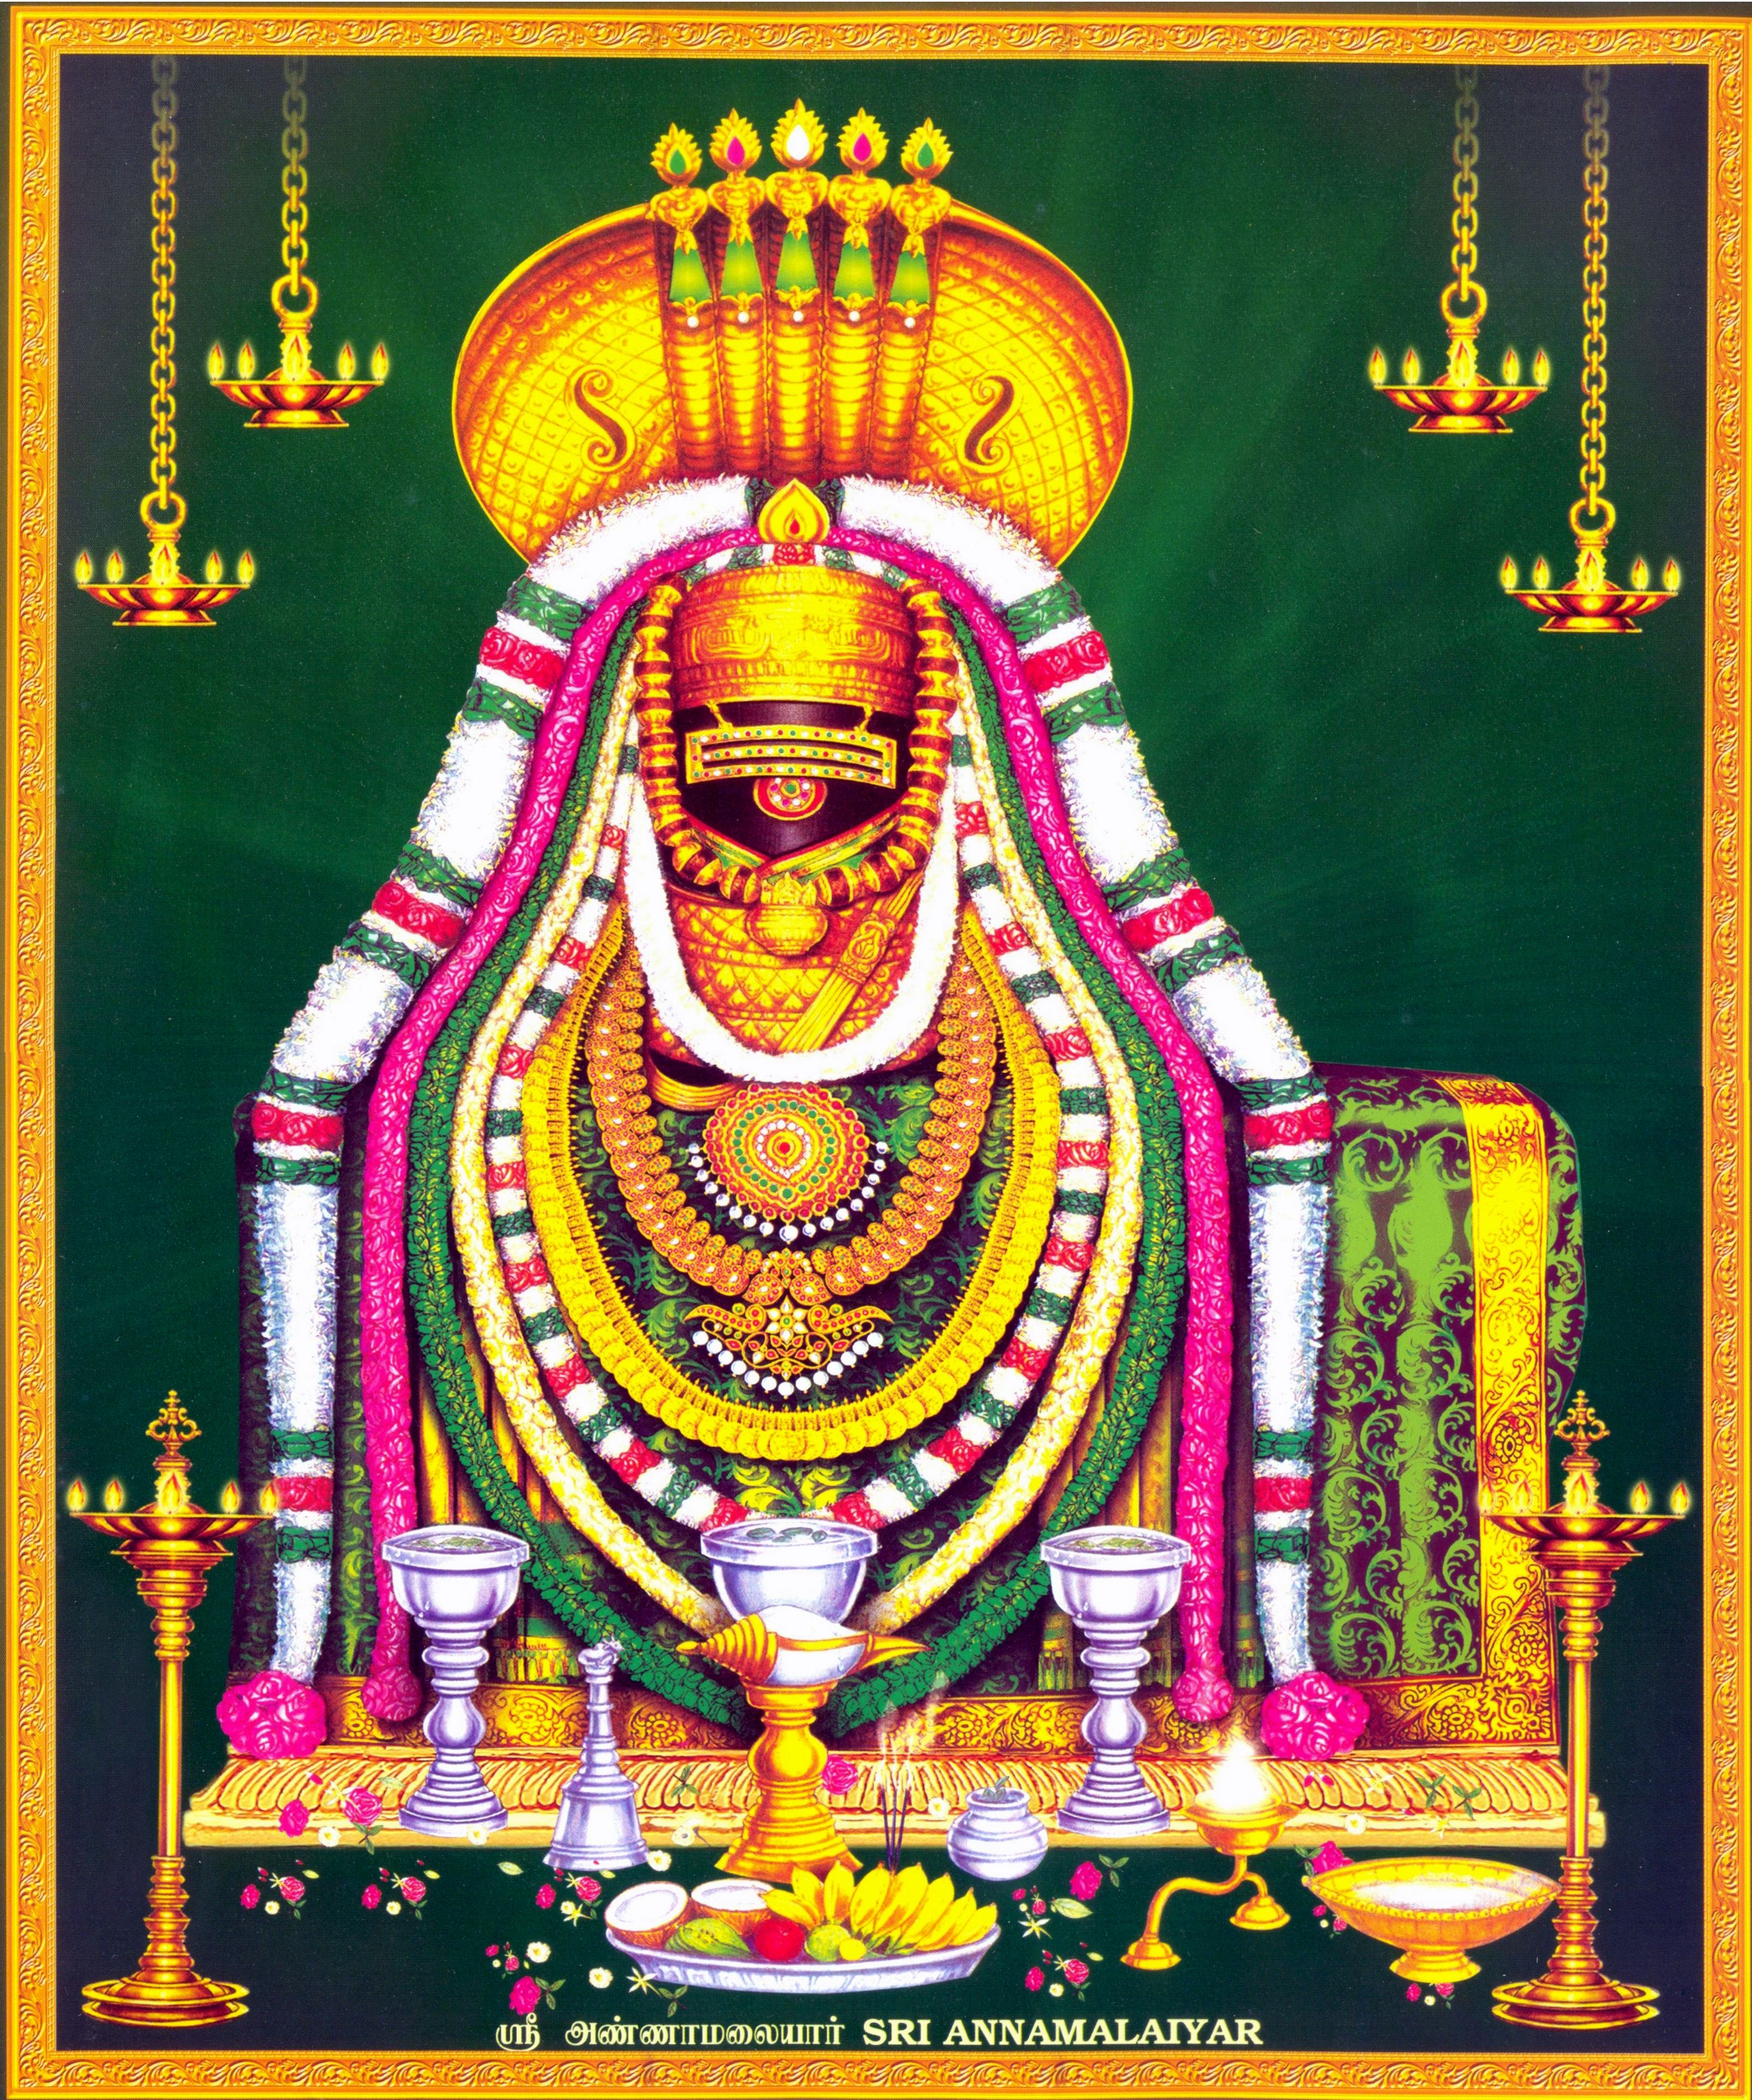 Thiruvannamalai. S.P.I.R.I.T.U.A.L M.I.N.D.S